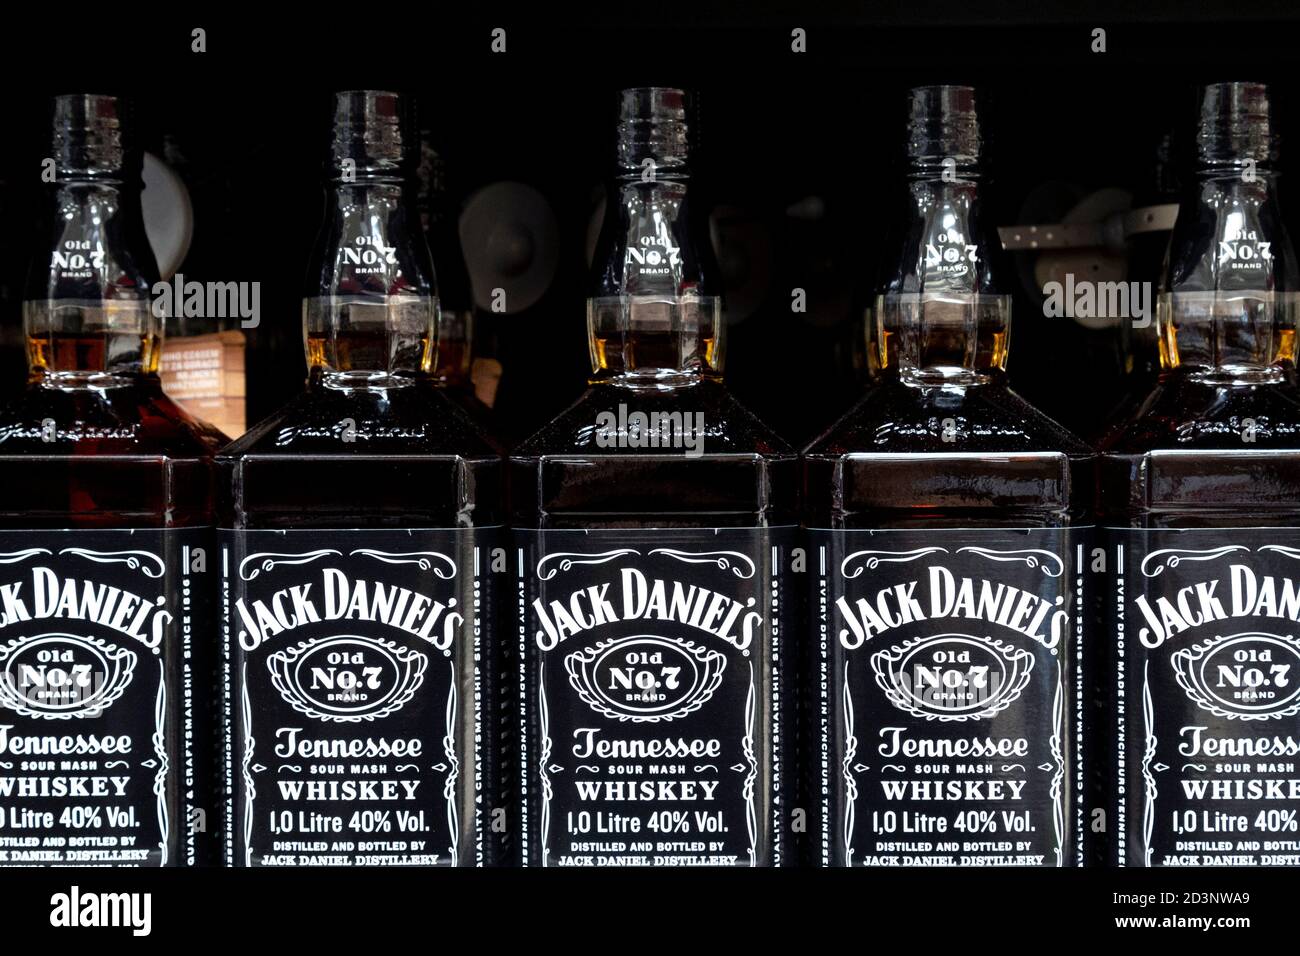 Bottiglie di Jack Daniels No.7 Tennessee Whiskey in un supermercato Foto Stock